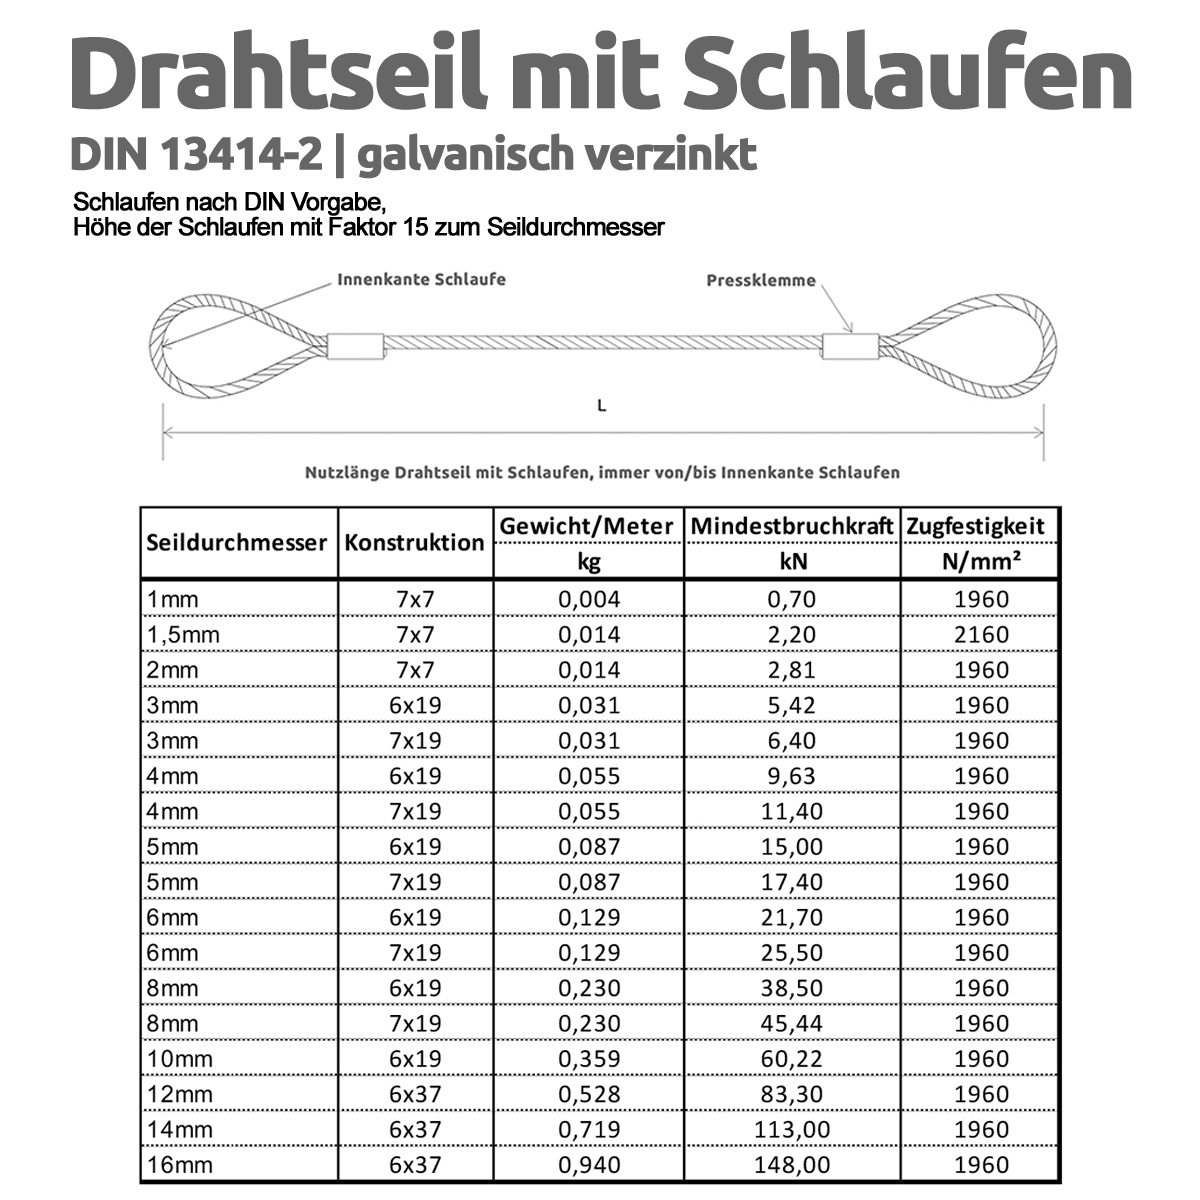 Drahtseil_verzinkt_mit_Schlaufen_Grafik_1200x1200